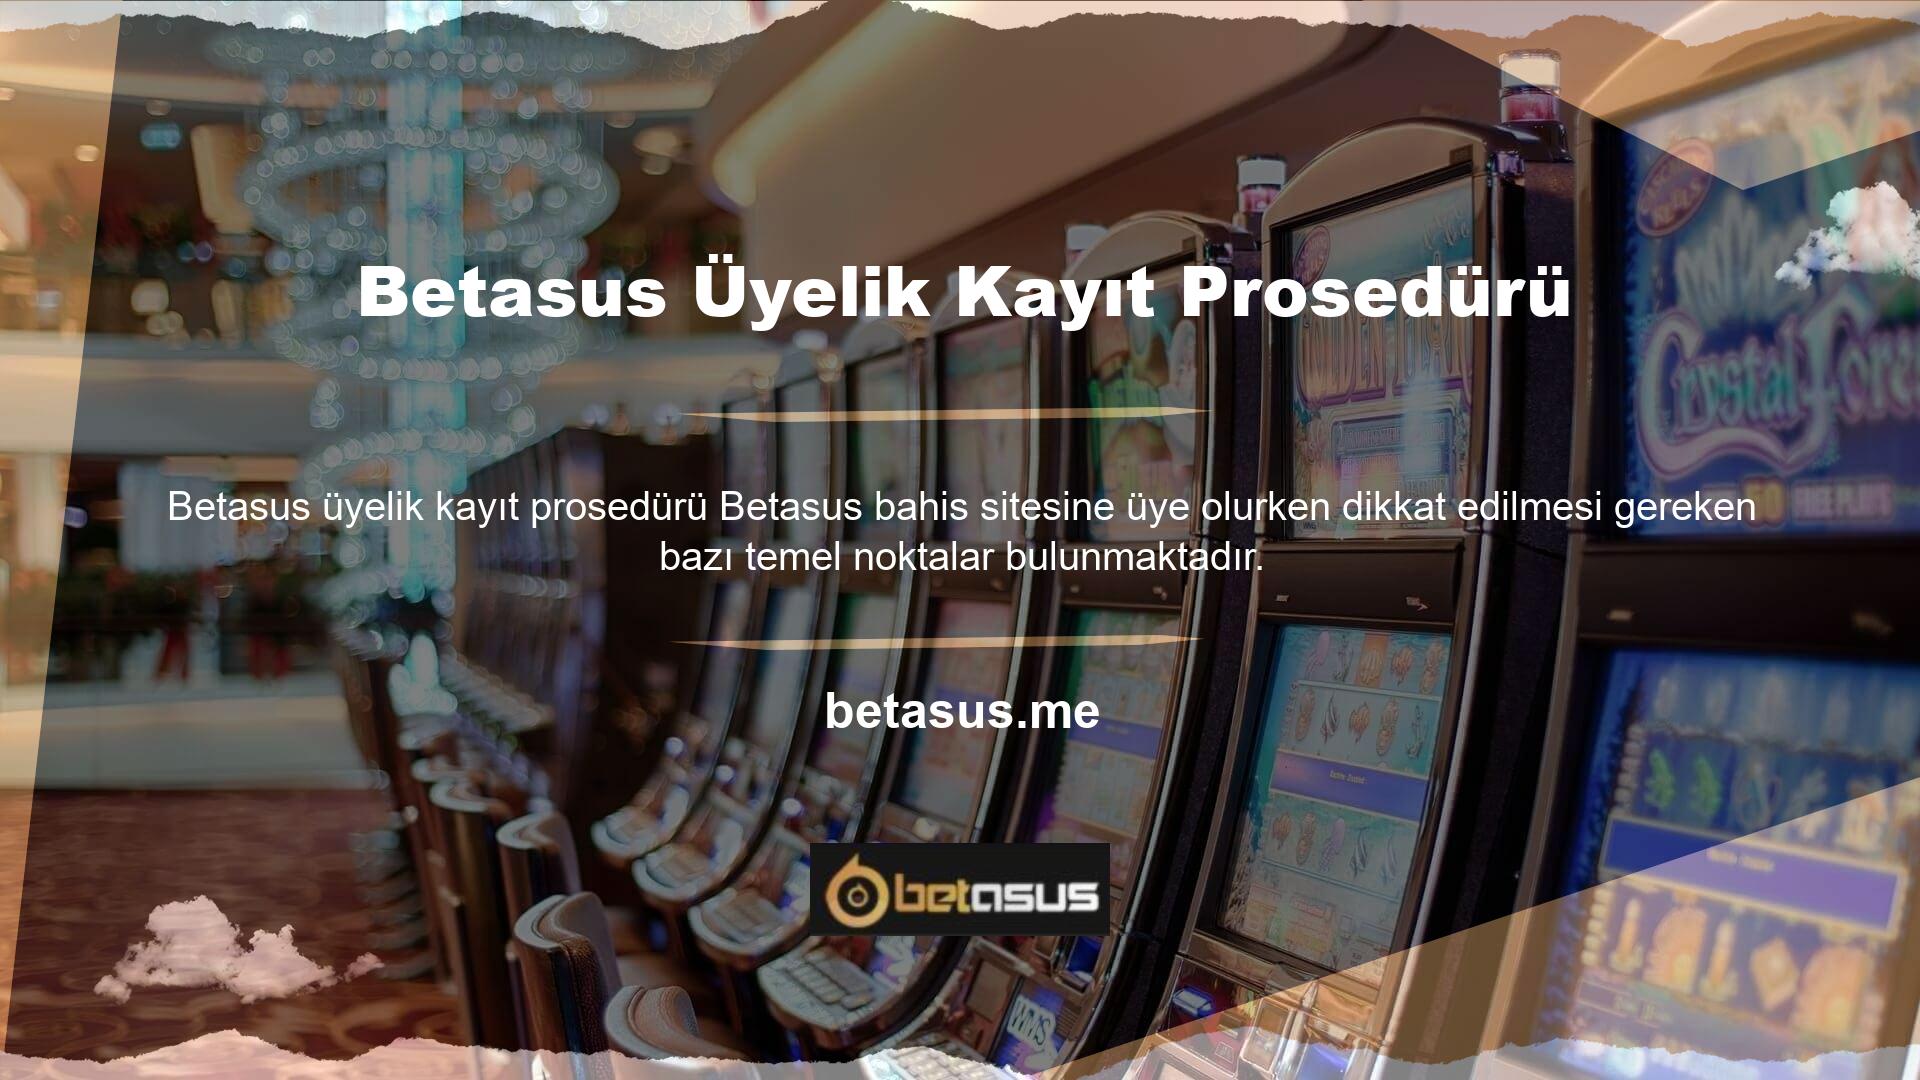 Web sitemizdeki butonu kullanarak Betasus giriş yaptığınızda karşınıza üyelik bilgilerinizi isteyen bir form çıkacaktır